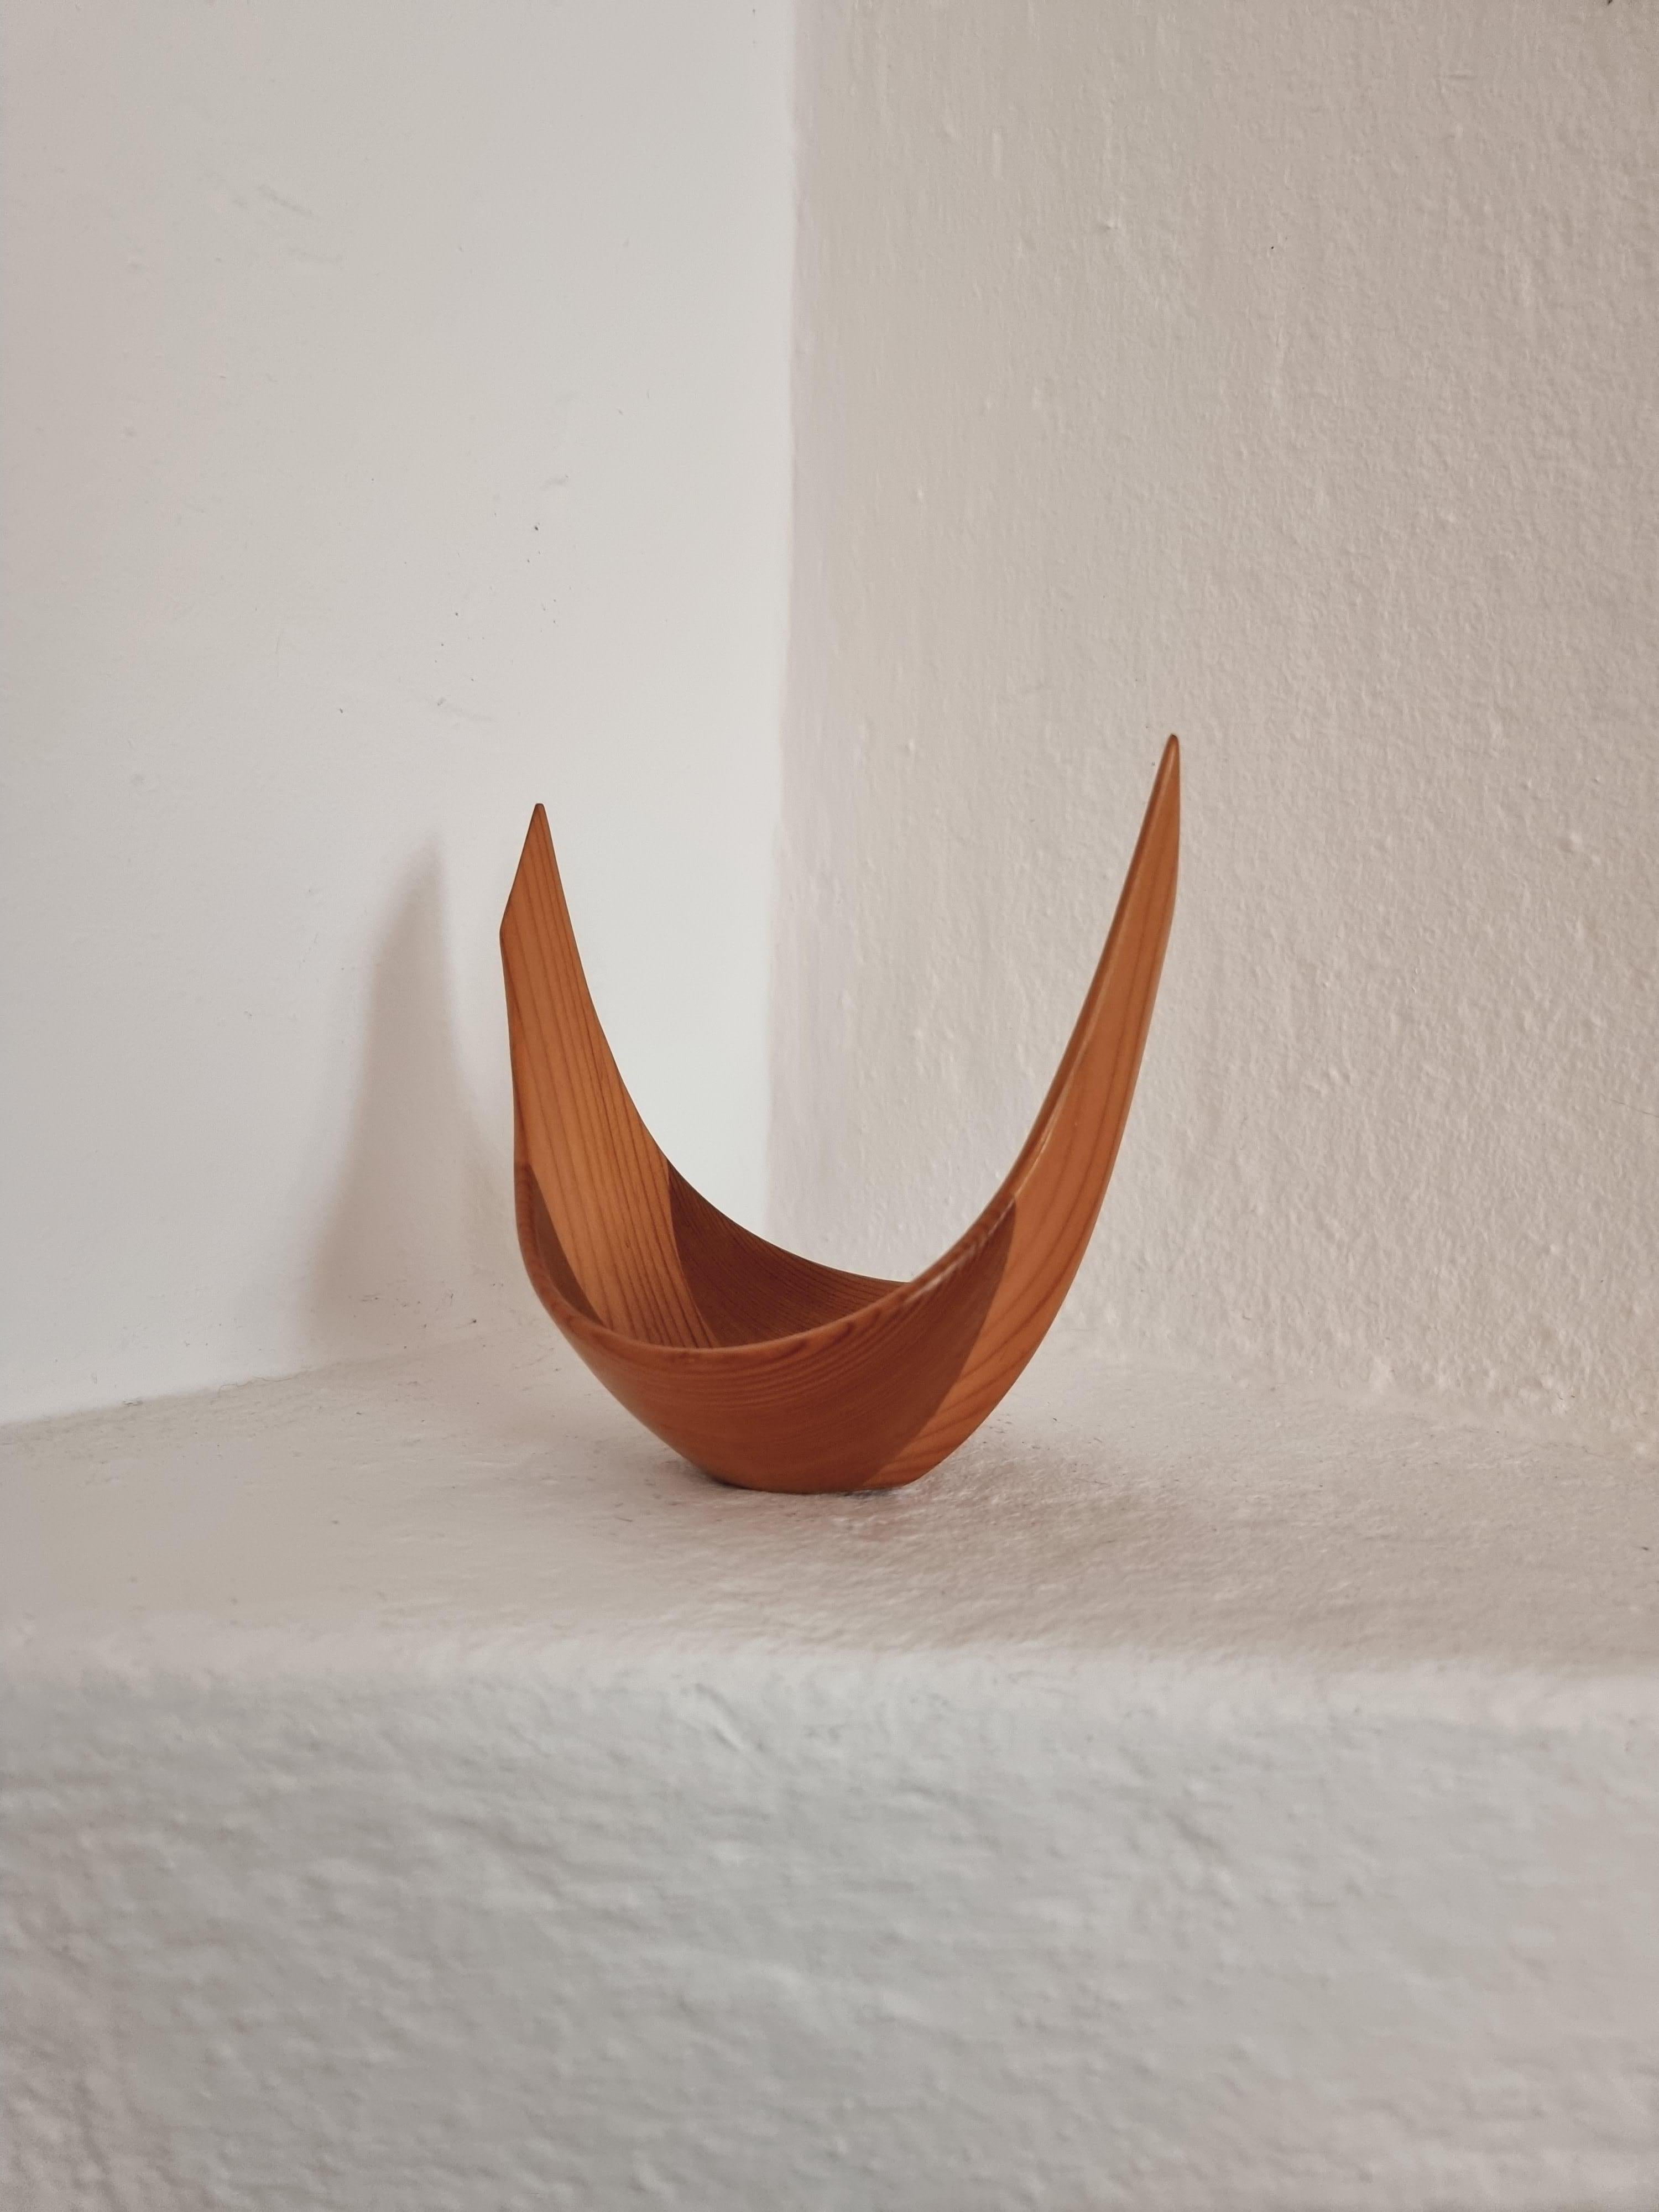 20th Century Johnny Mattsson, Wooden Sculpture / Bowl, Scandinavian Modern